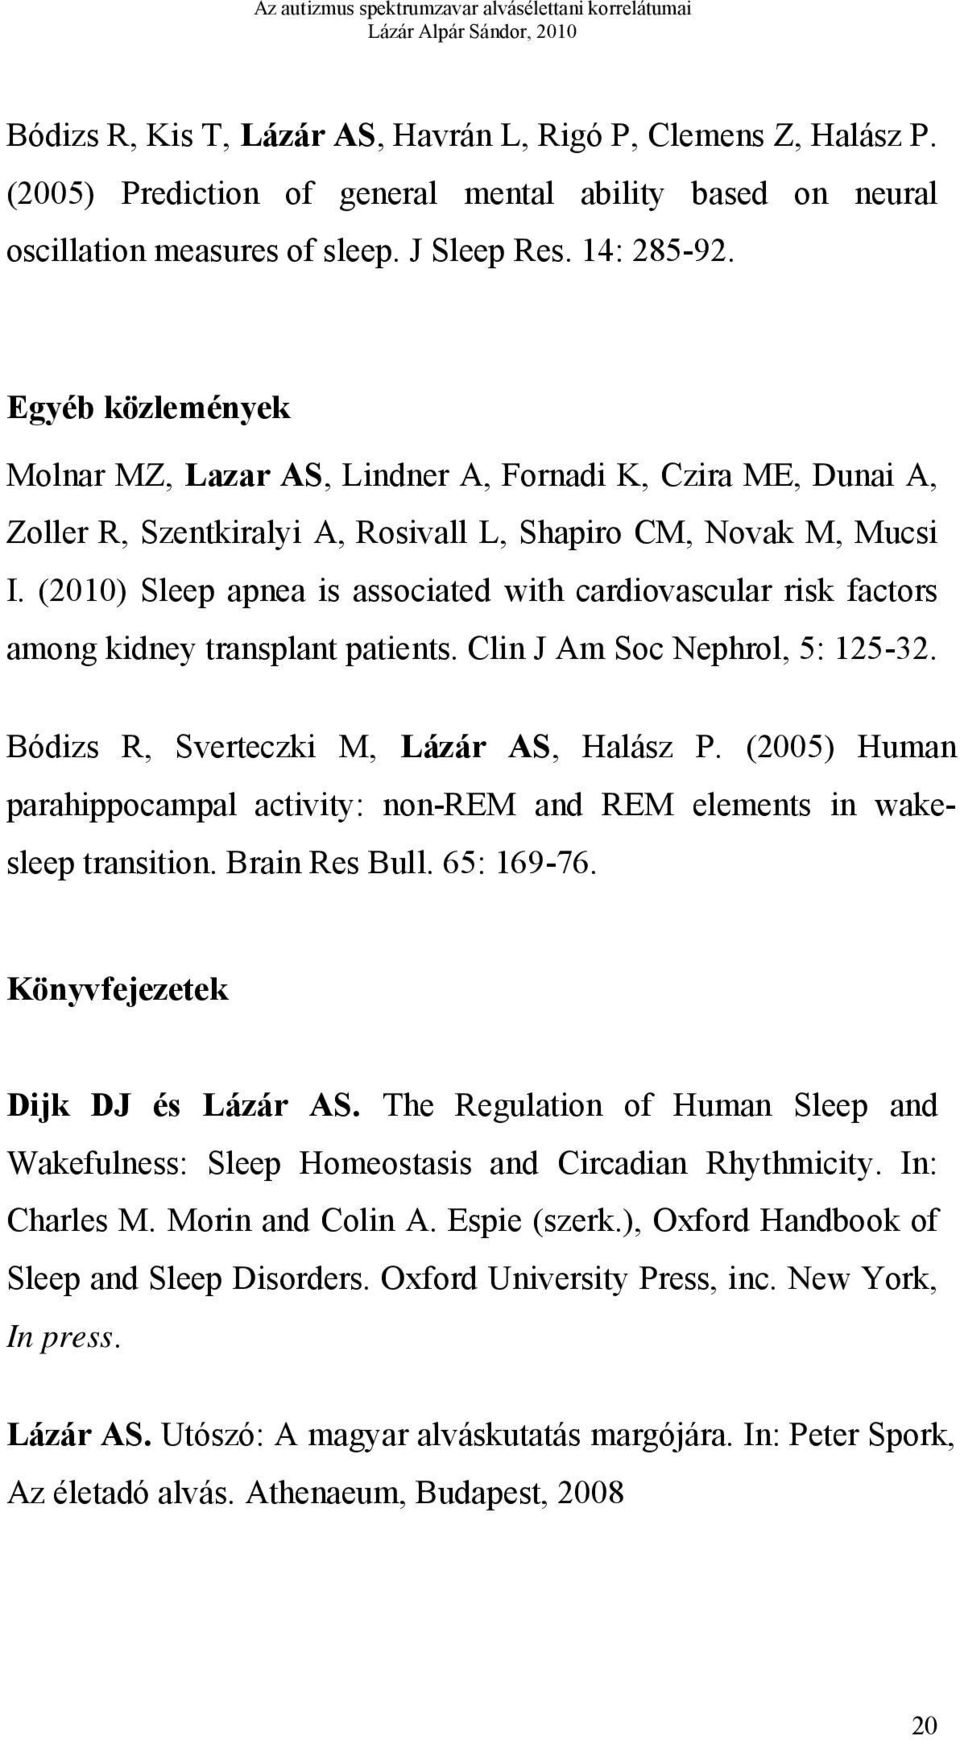 (2010) Sleep apnea is associated with cardiovascular risk factors among kidney transplant patients. Clin J Am Soc Nephrol, 5: 125-32. Bódizs R, Sverteczki M, Lázár AS, Halász P.